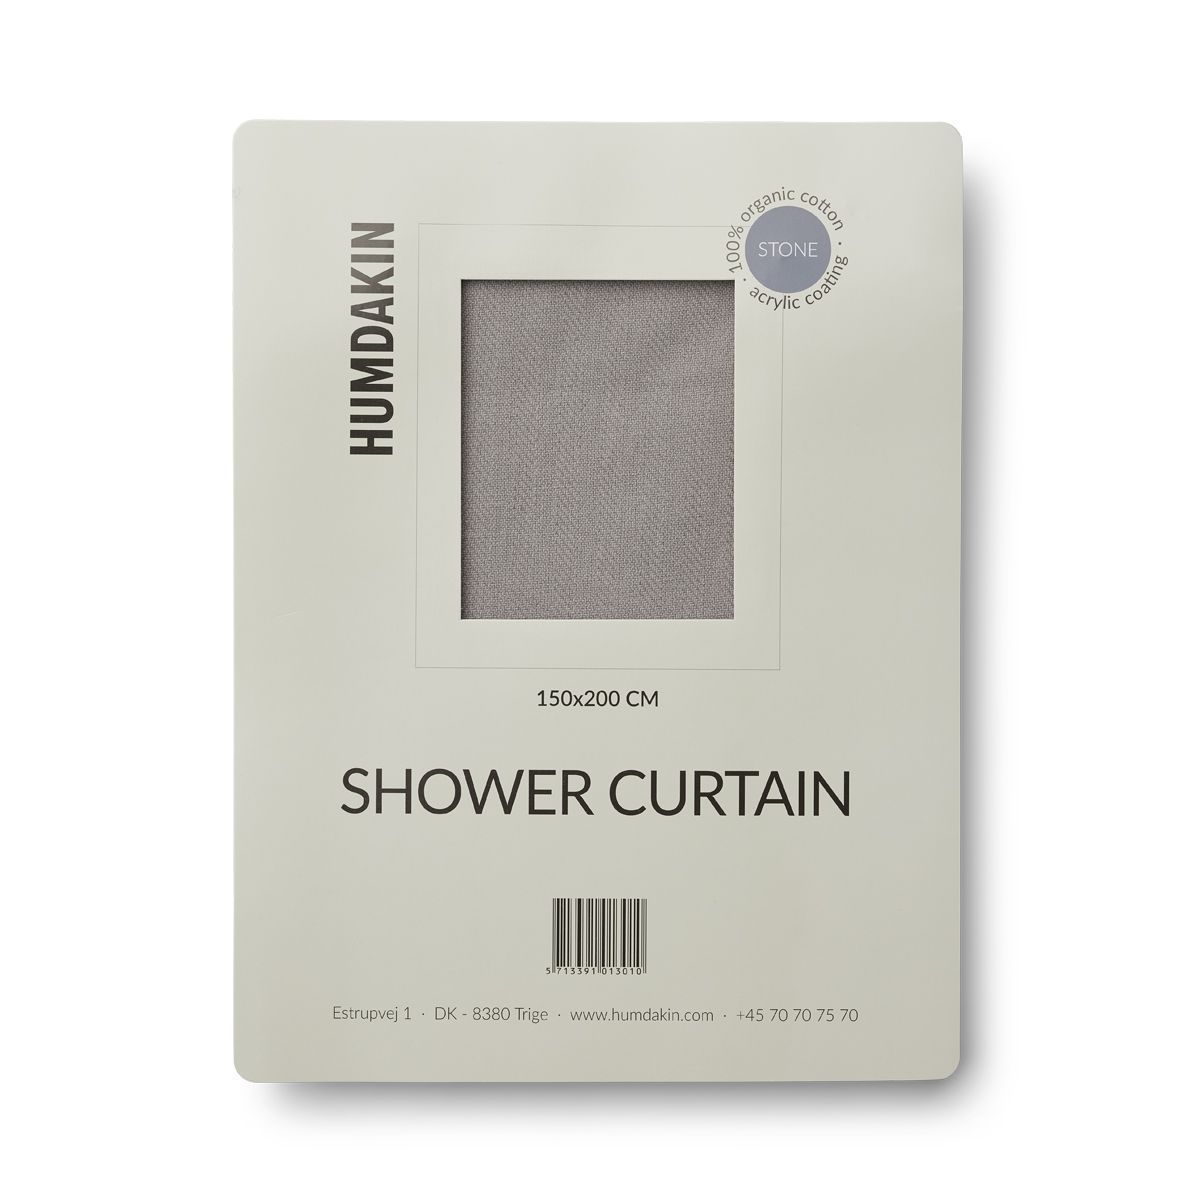 Humdakin sprchový závěs vyrobený z organické bavlny, kámen